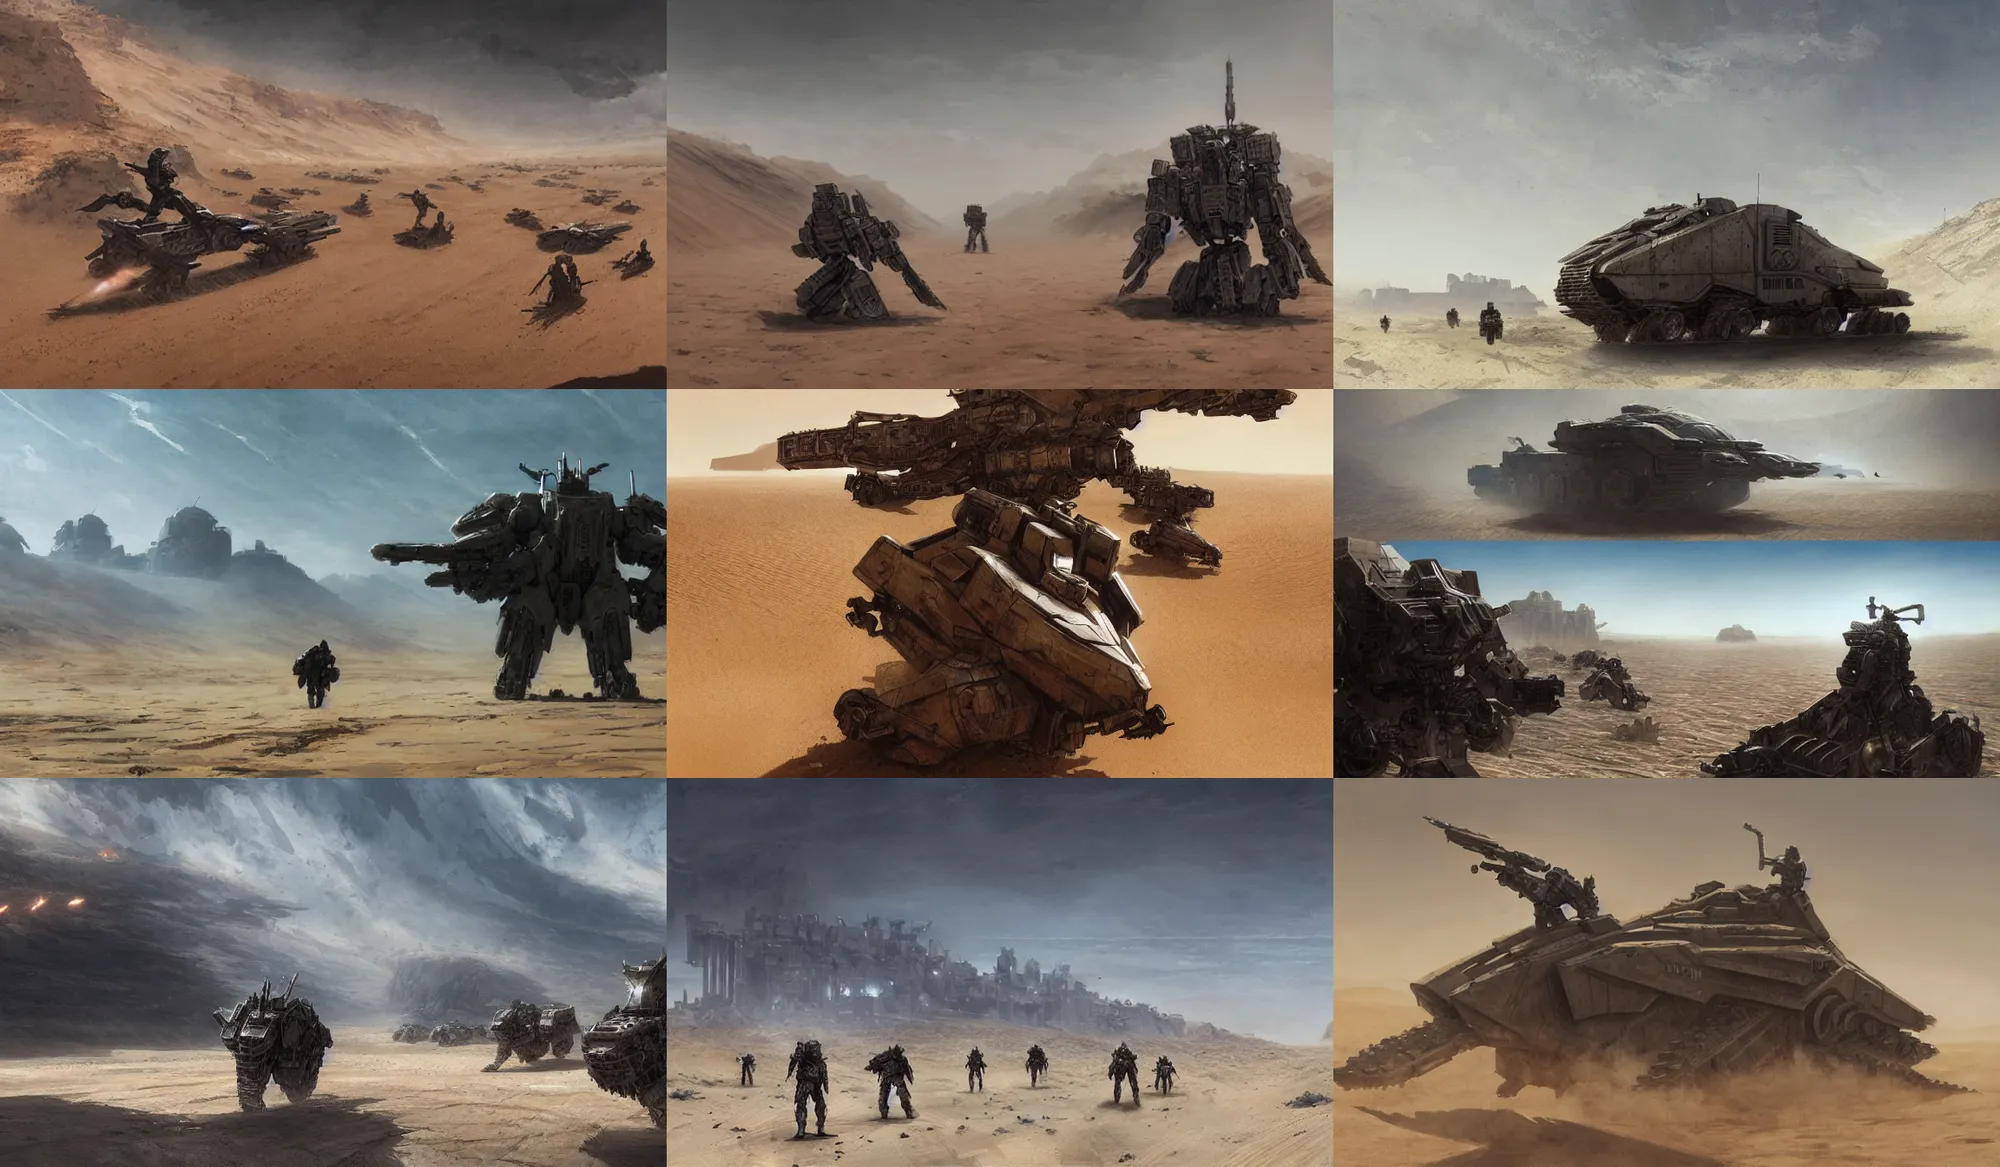 Prompt: armored core v running across the open desert, empty desert, sand, karst landscape, wide shot, concept art by greg rutkowski